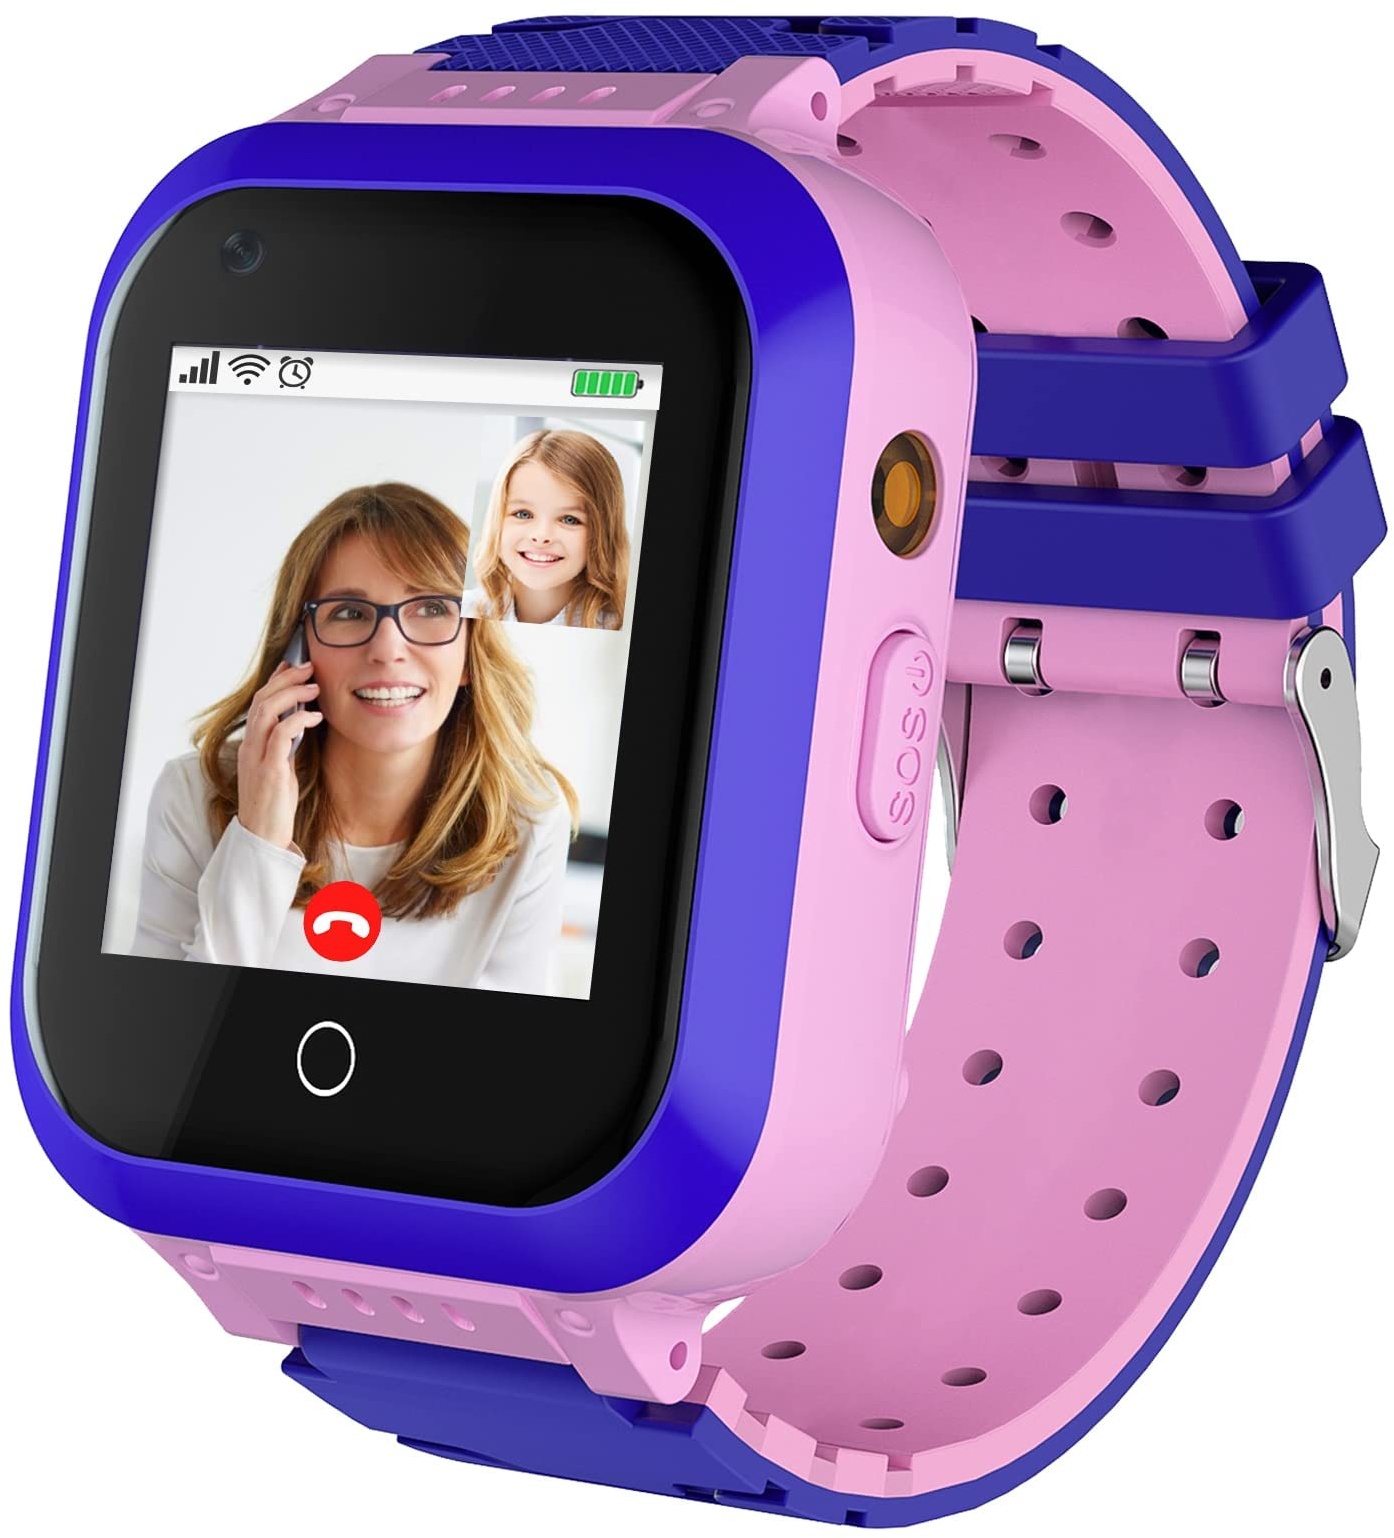 LiveGo 4G Kinder Smartwatch mit GPS-Tracker,Kindertelefon Smart Watch mit Kamera,Anruf,Schrittzähler,SOS,Touchscreen Armbanduhr Kinder Smartphone,3-12 Jahre Kinder Student Geburtstagsgeschenke